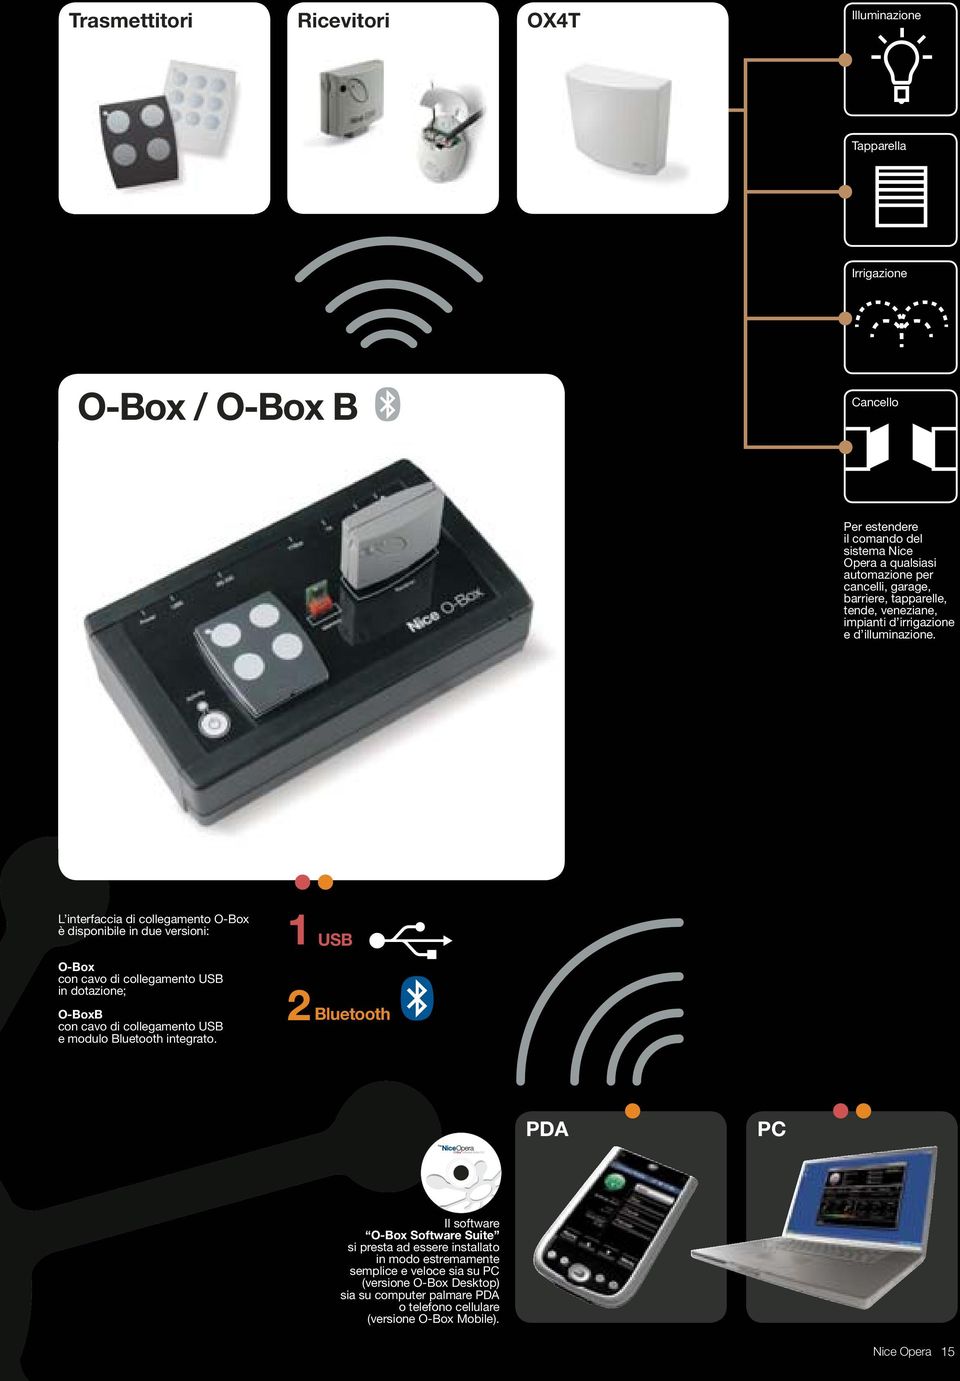 L interfaccia di collegamento O-Box è disponibile in due versioni: O-Box con cavo di collegamento USB in dotazione; O-BoxB con cavo di collegamento USB e modulo Bluetooth